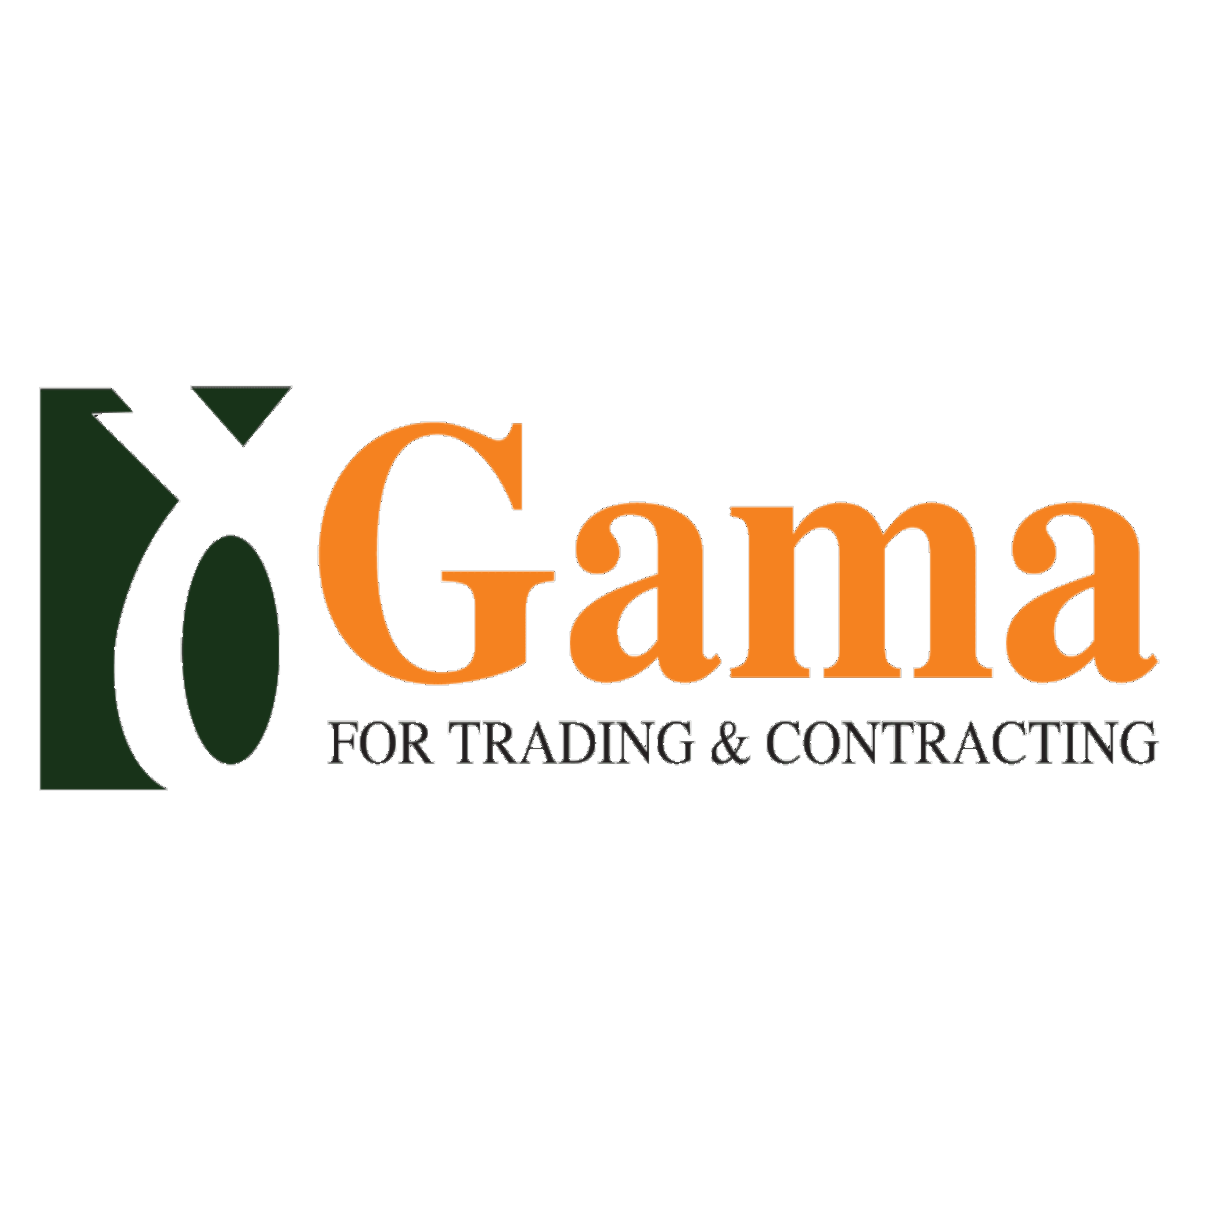 Gama Construction